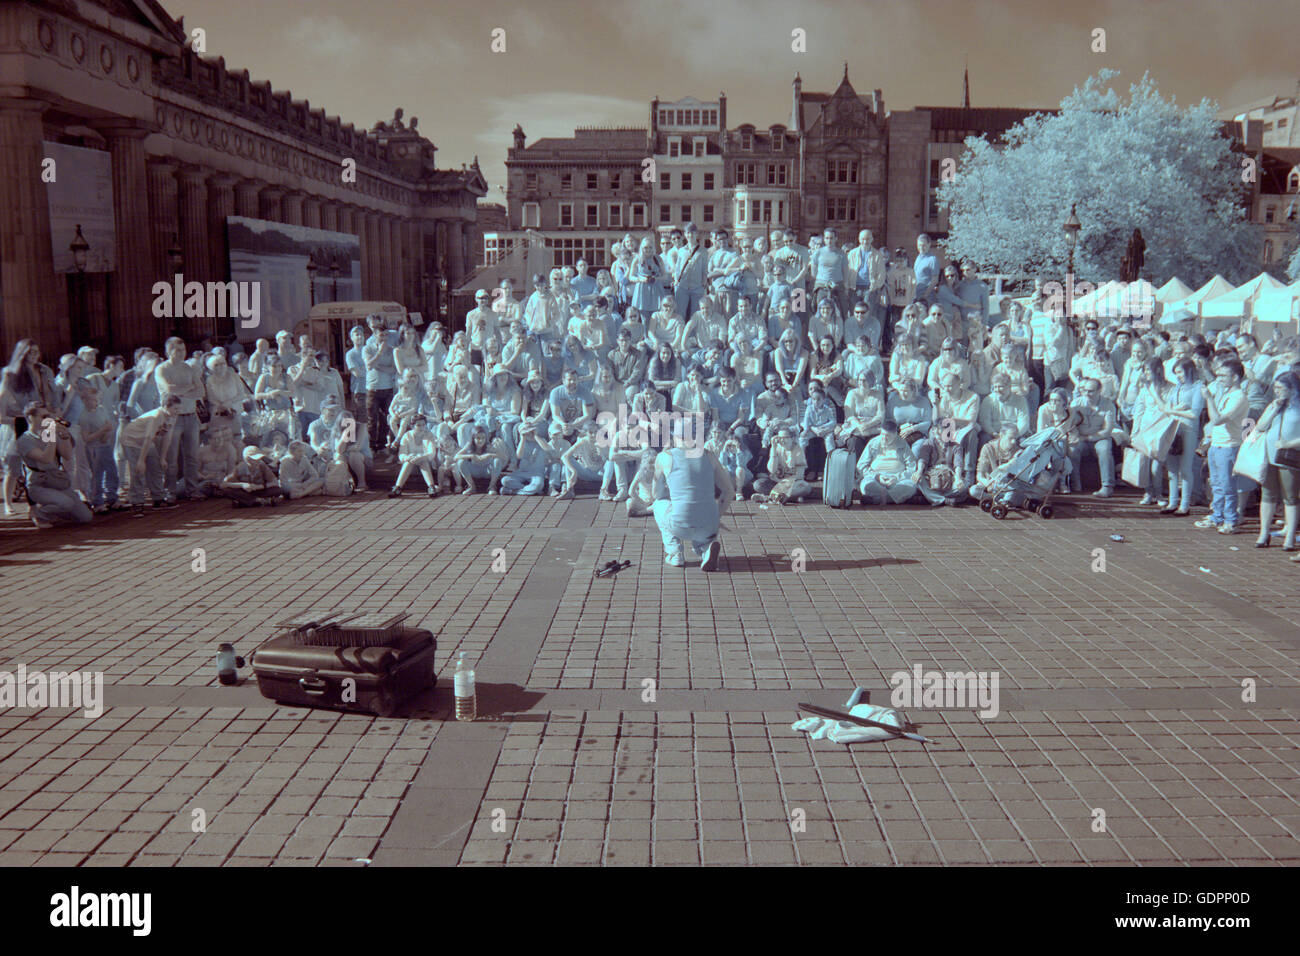 Infra Red-Kamera Szenen Edinburgh Festival Fringe Jungfrau gesponsert Straßenfest Edinburgh, Scotland, UK Stockfoto